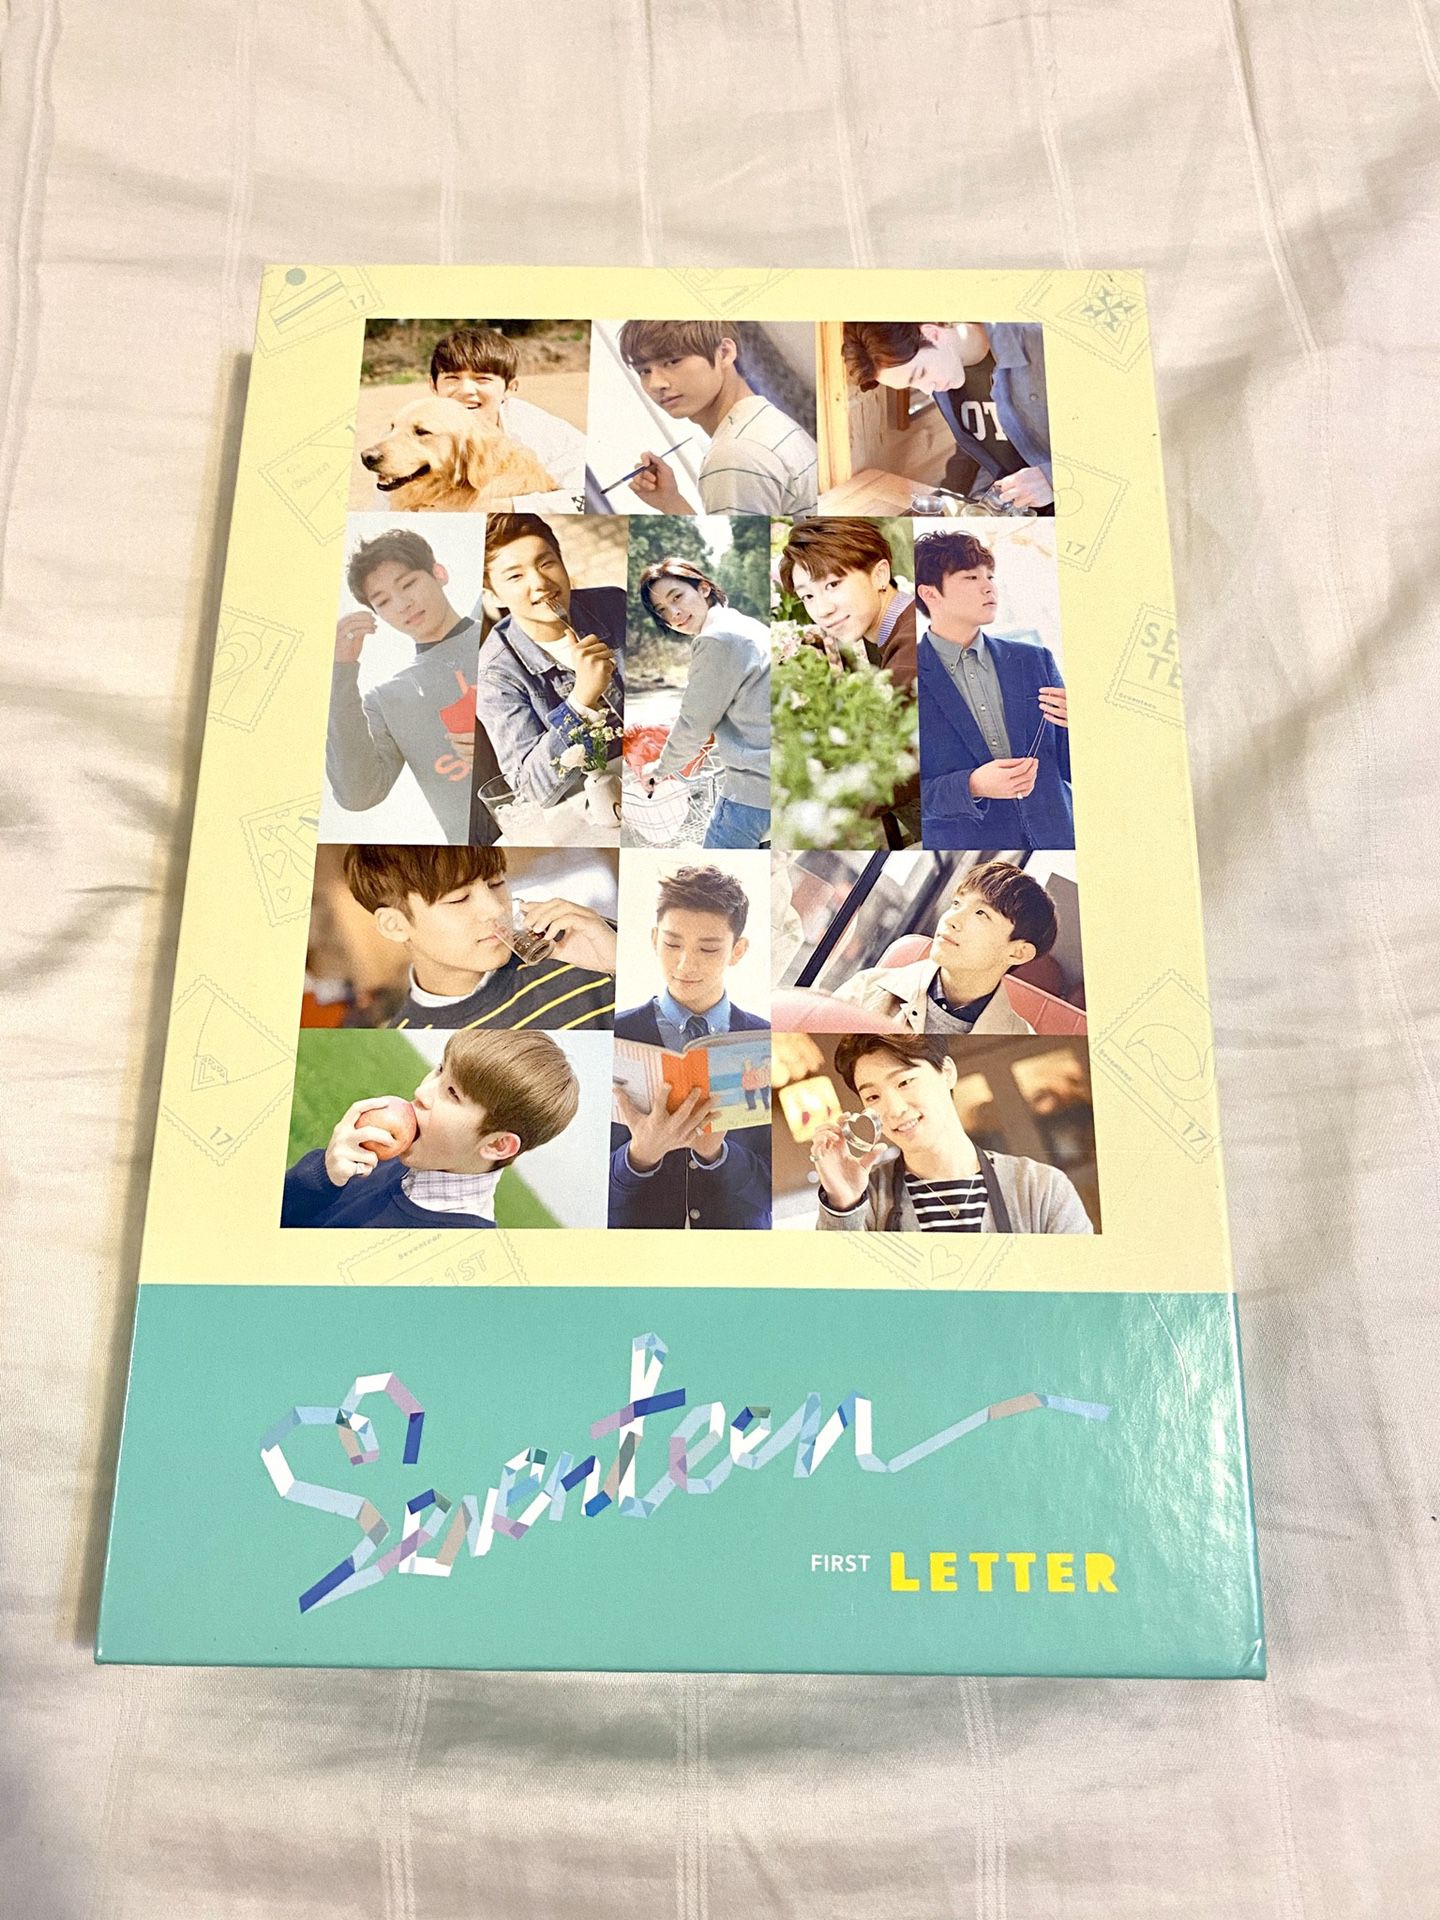 Seventeen - LOVE & LETTER 1st Album Letter Ver.